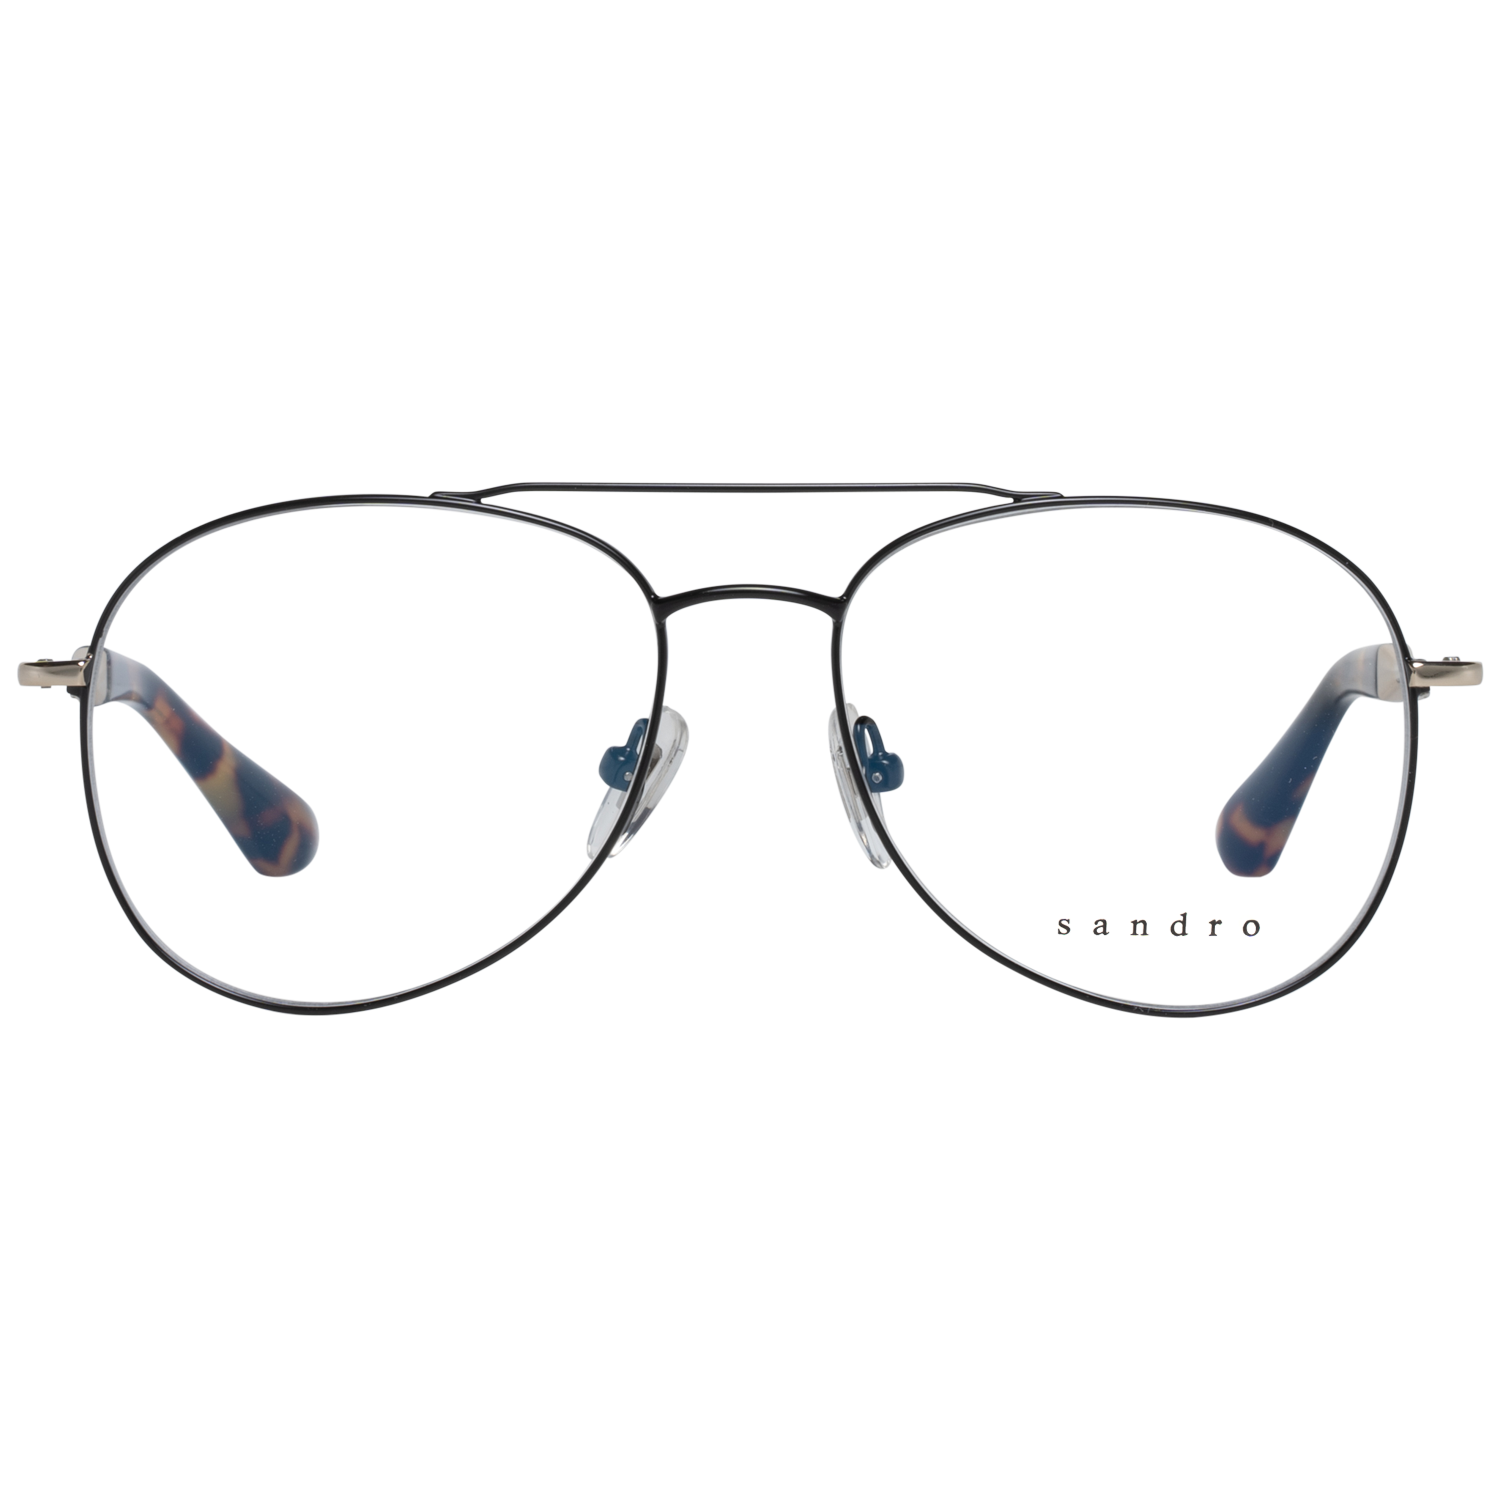 Sandro Frames Sandro Optical Frame SD4003 109 51 Eyeglasses Eyewear UK USA Australia 